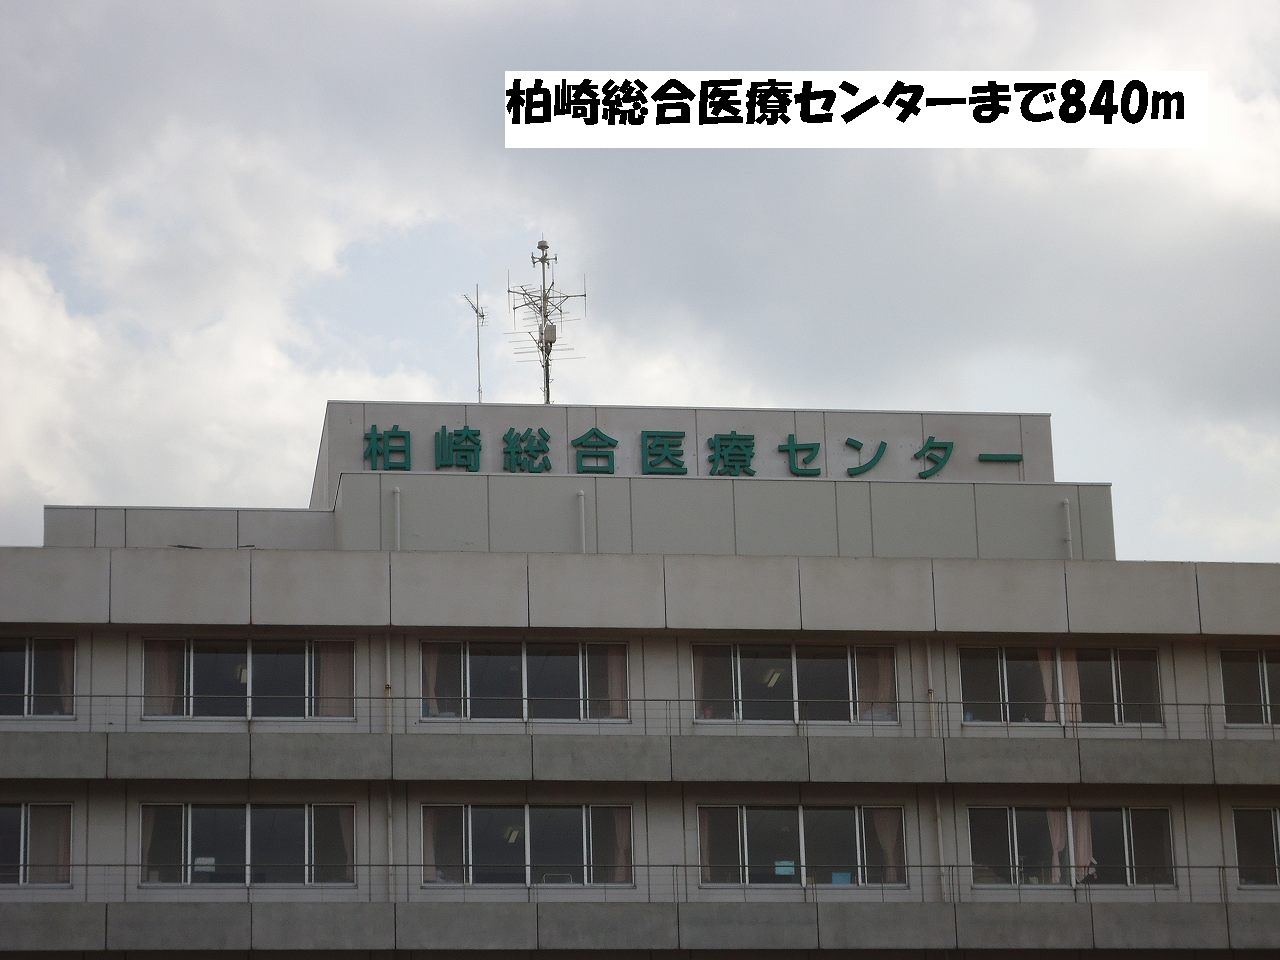 Hospital. Kashiwazaki General Medical Center until the (hospital) 840m